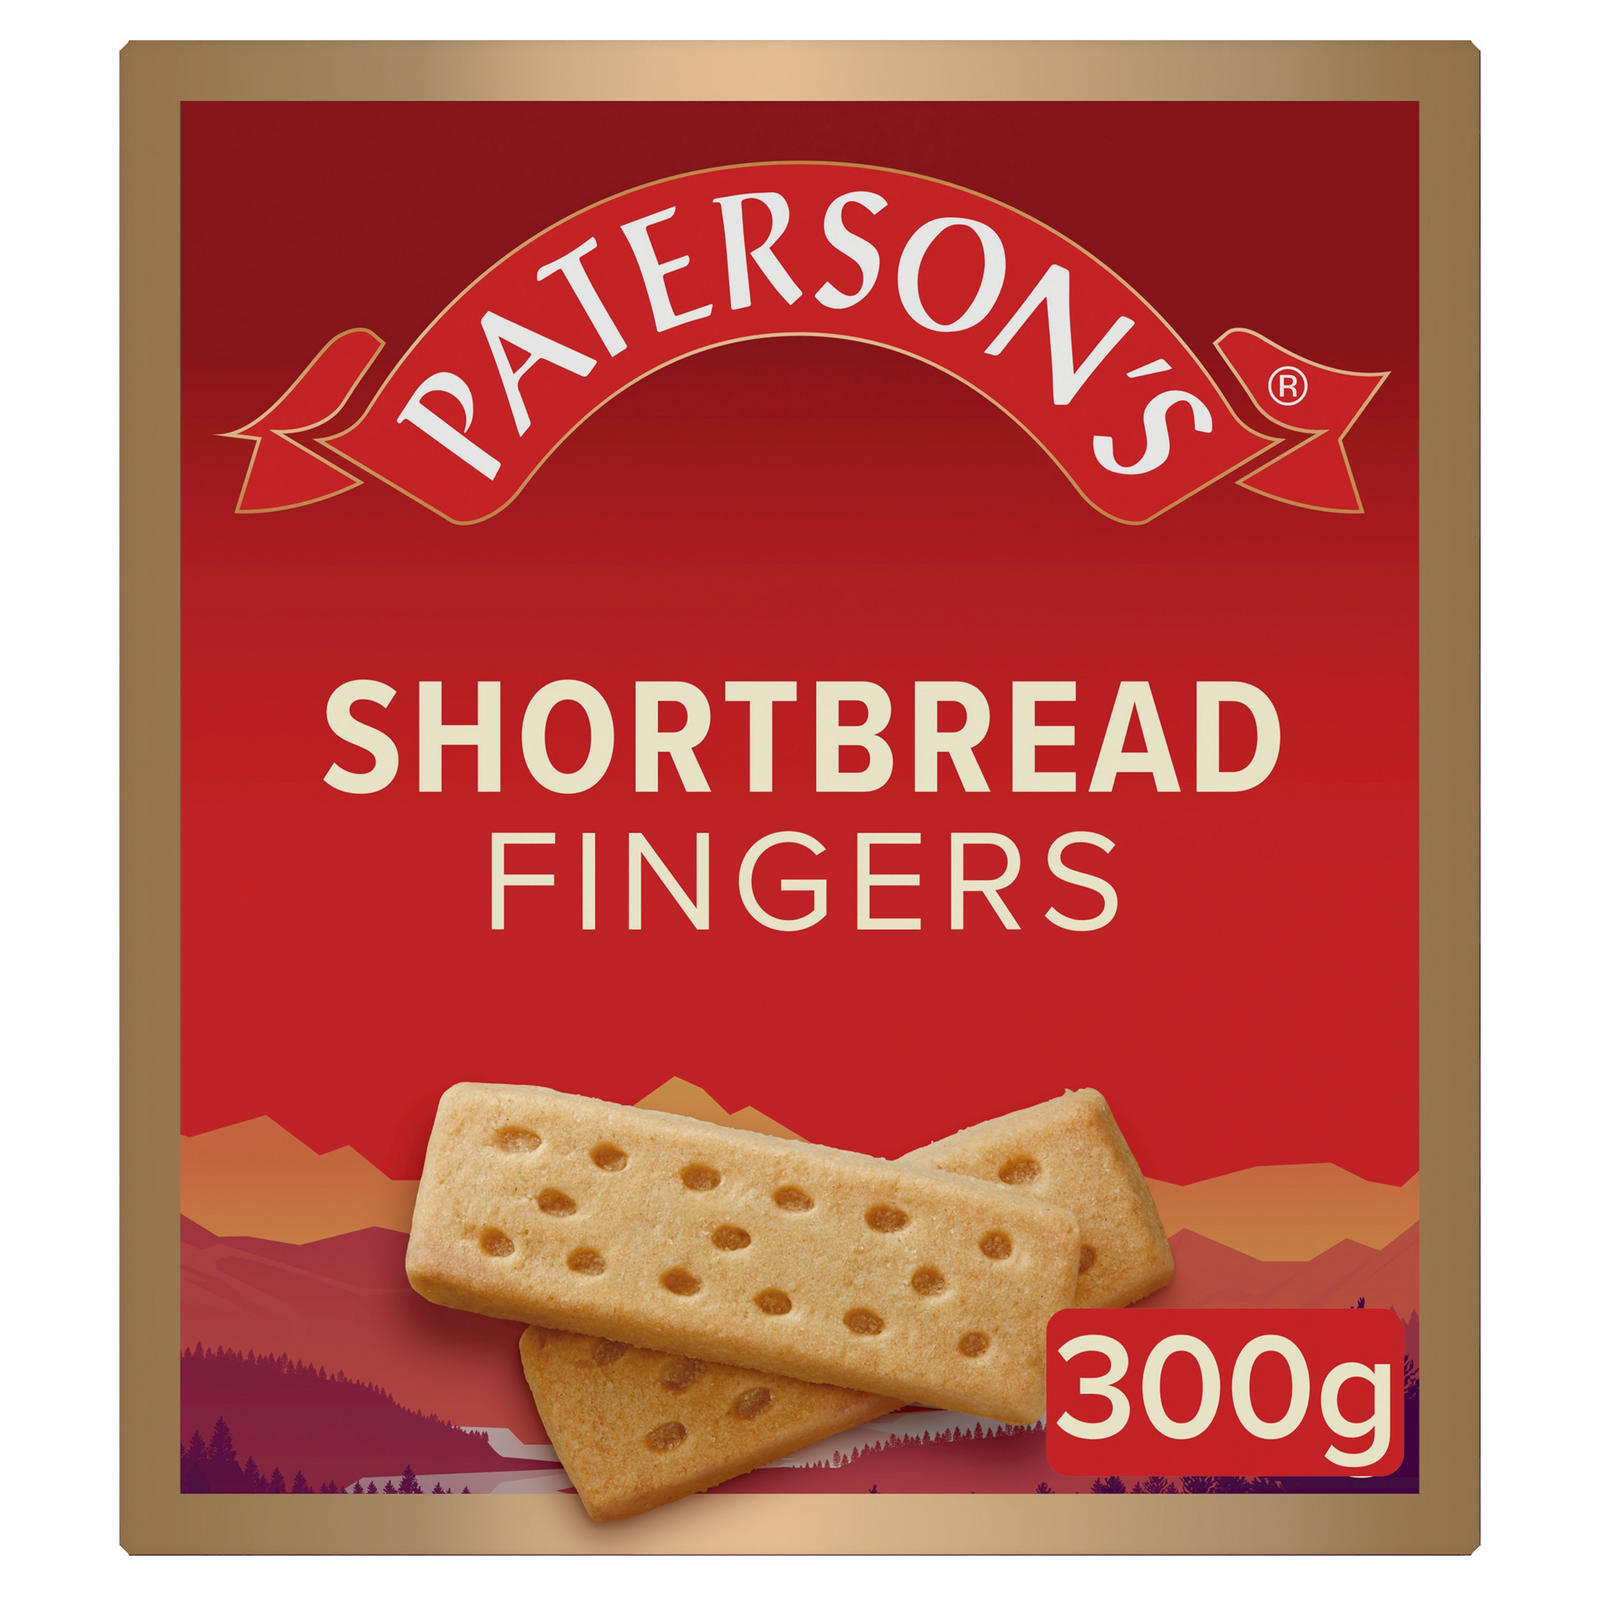 Paterson's Shortbread Fingers 300g